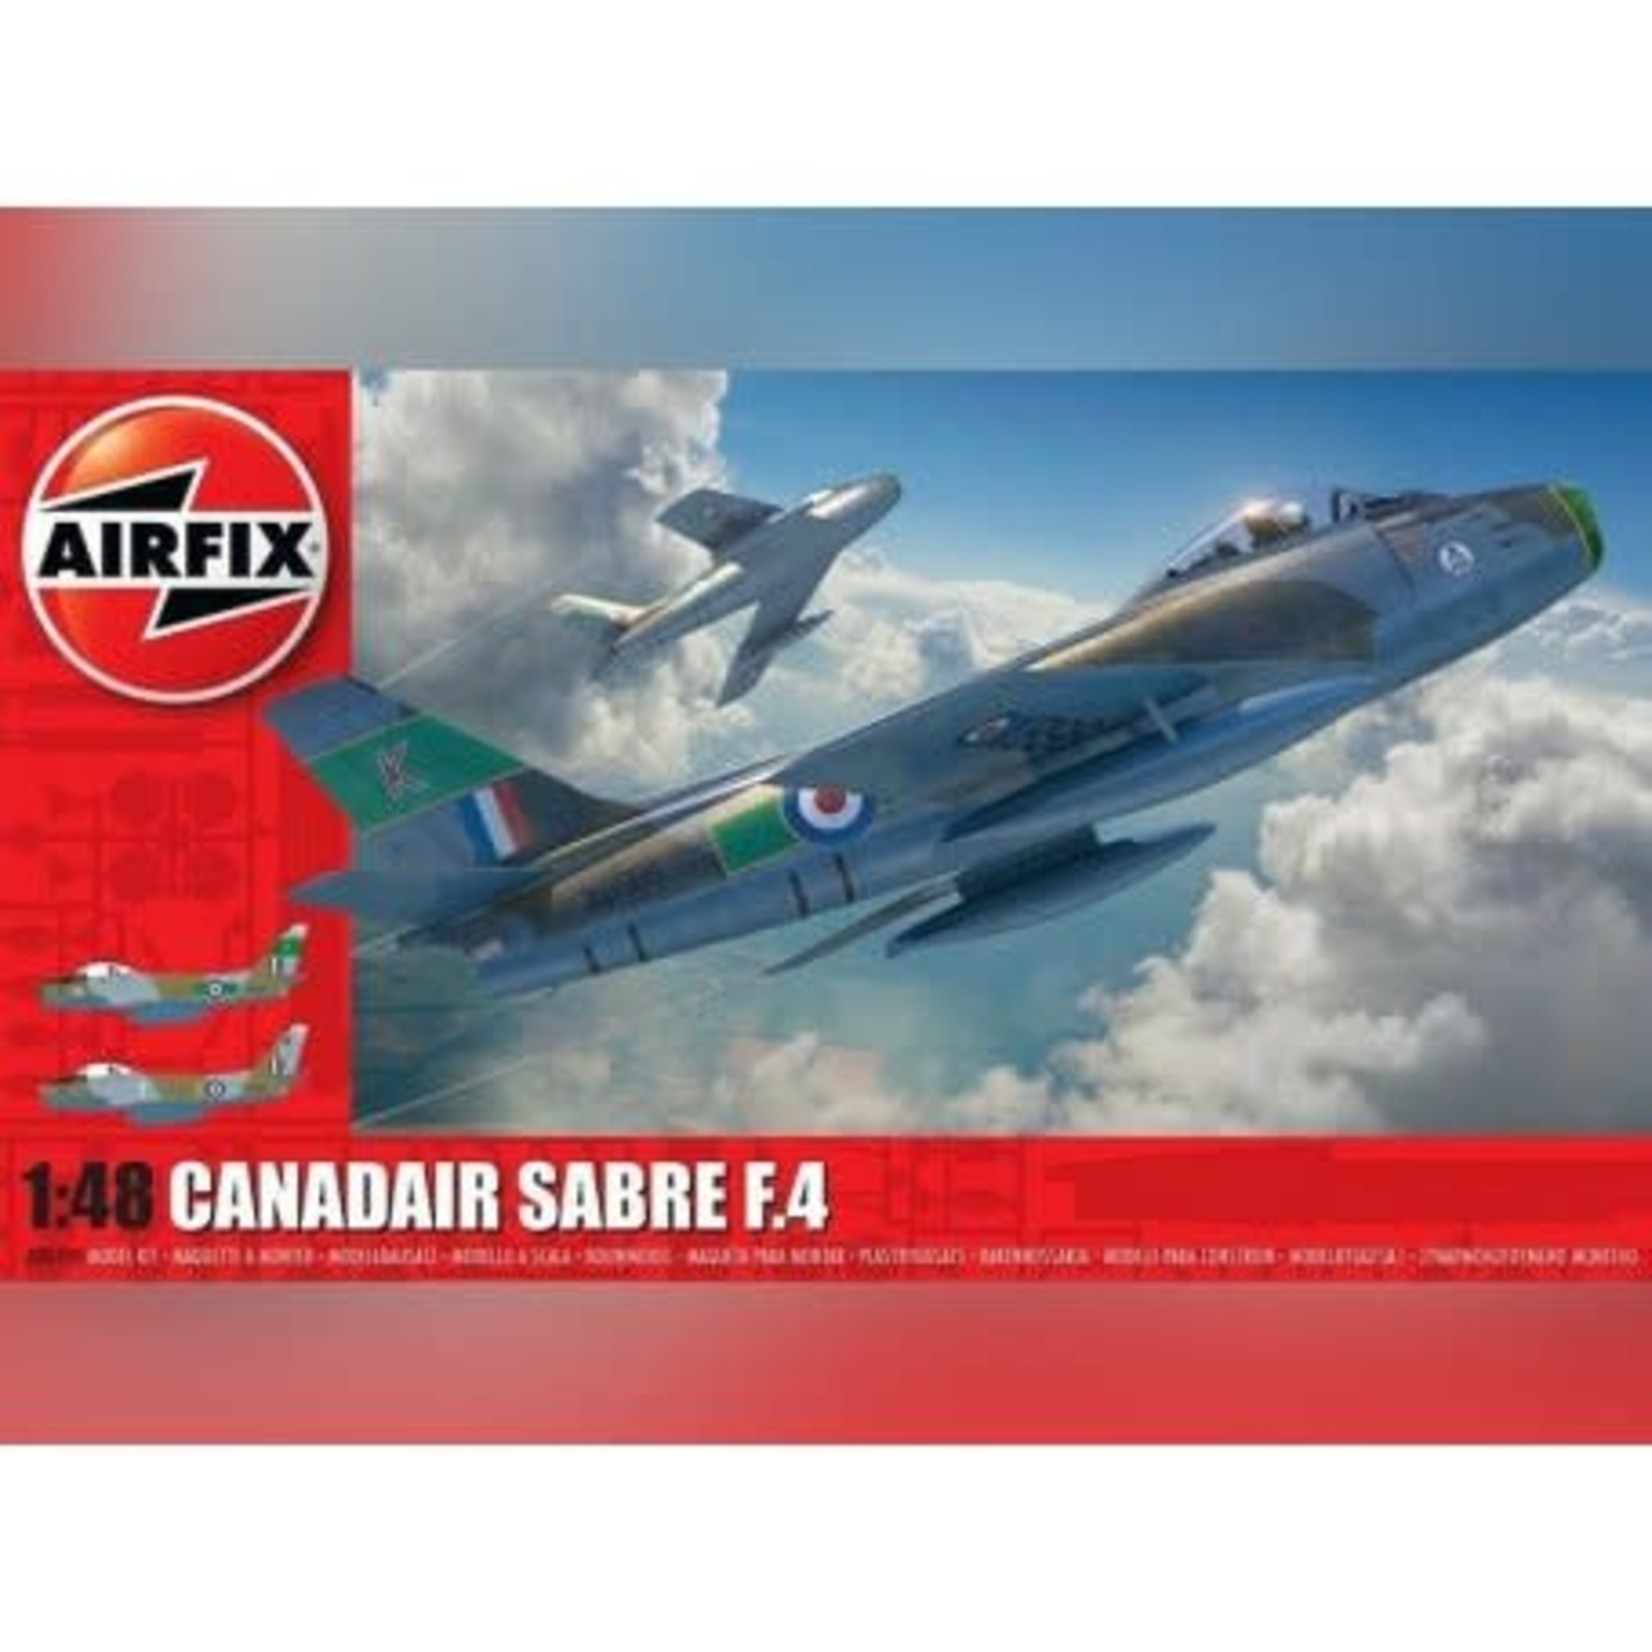 Airfix 1/48 Canadair F4 Sabre Kit